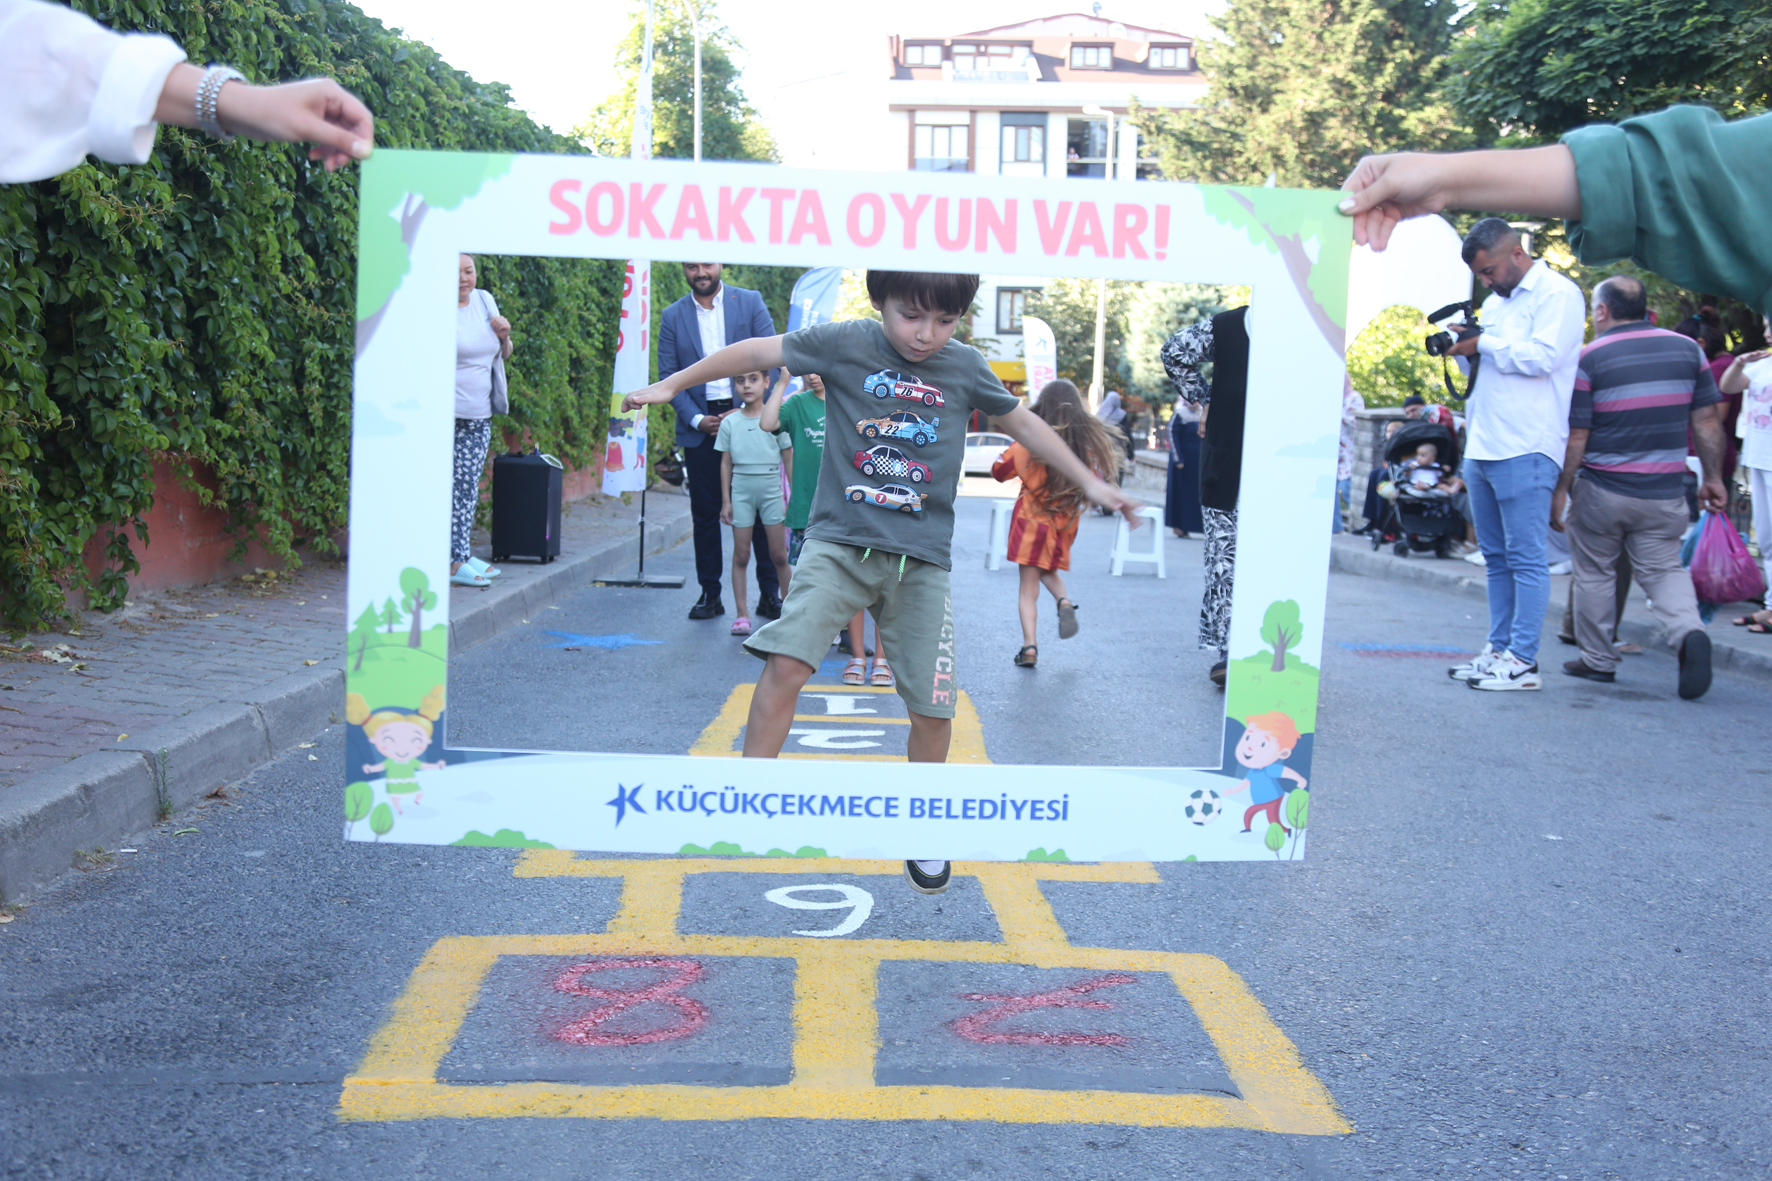 Küçükçekmece Belediyesi'nden “Sokakta Oyun Var” etkinliği